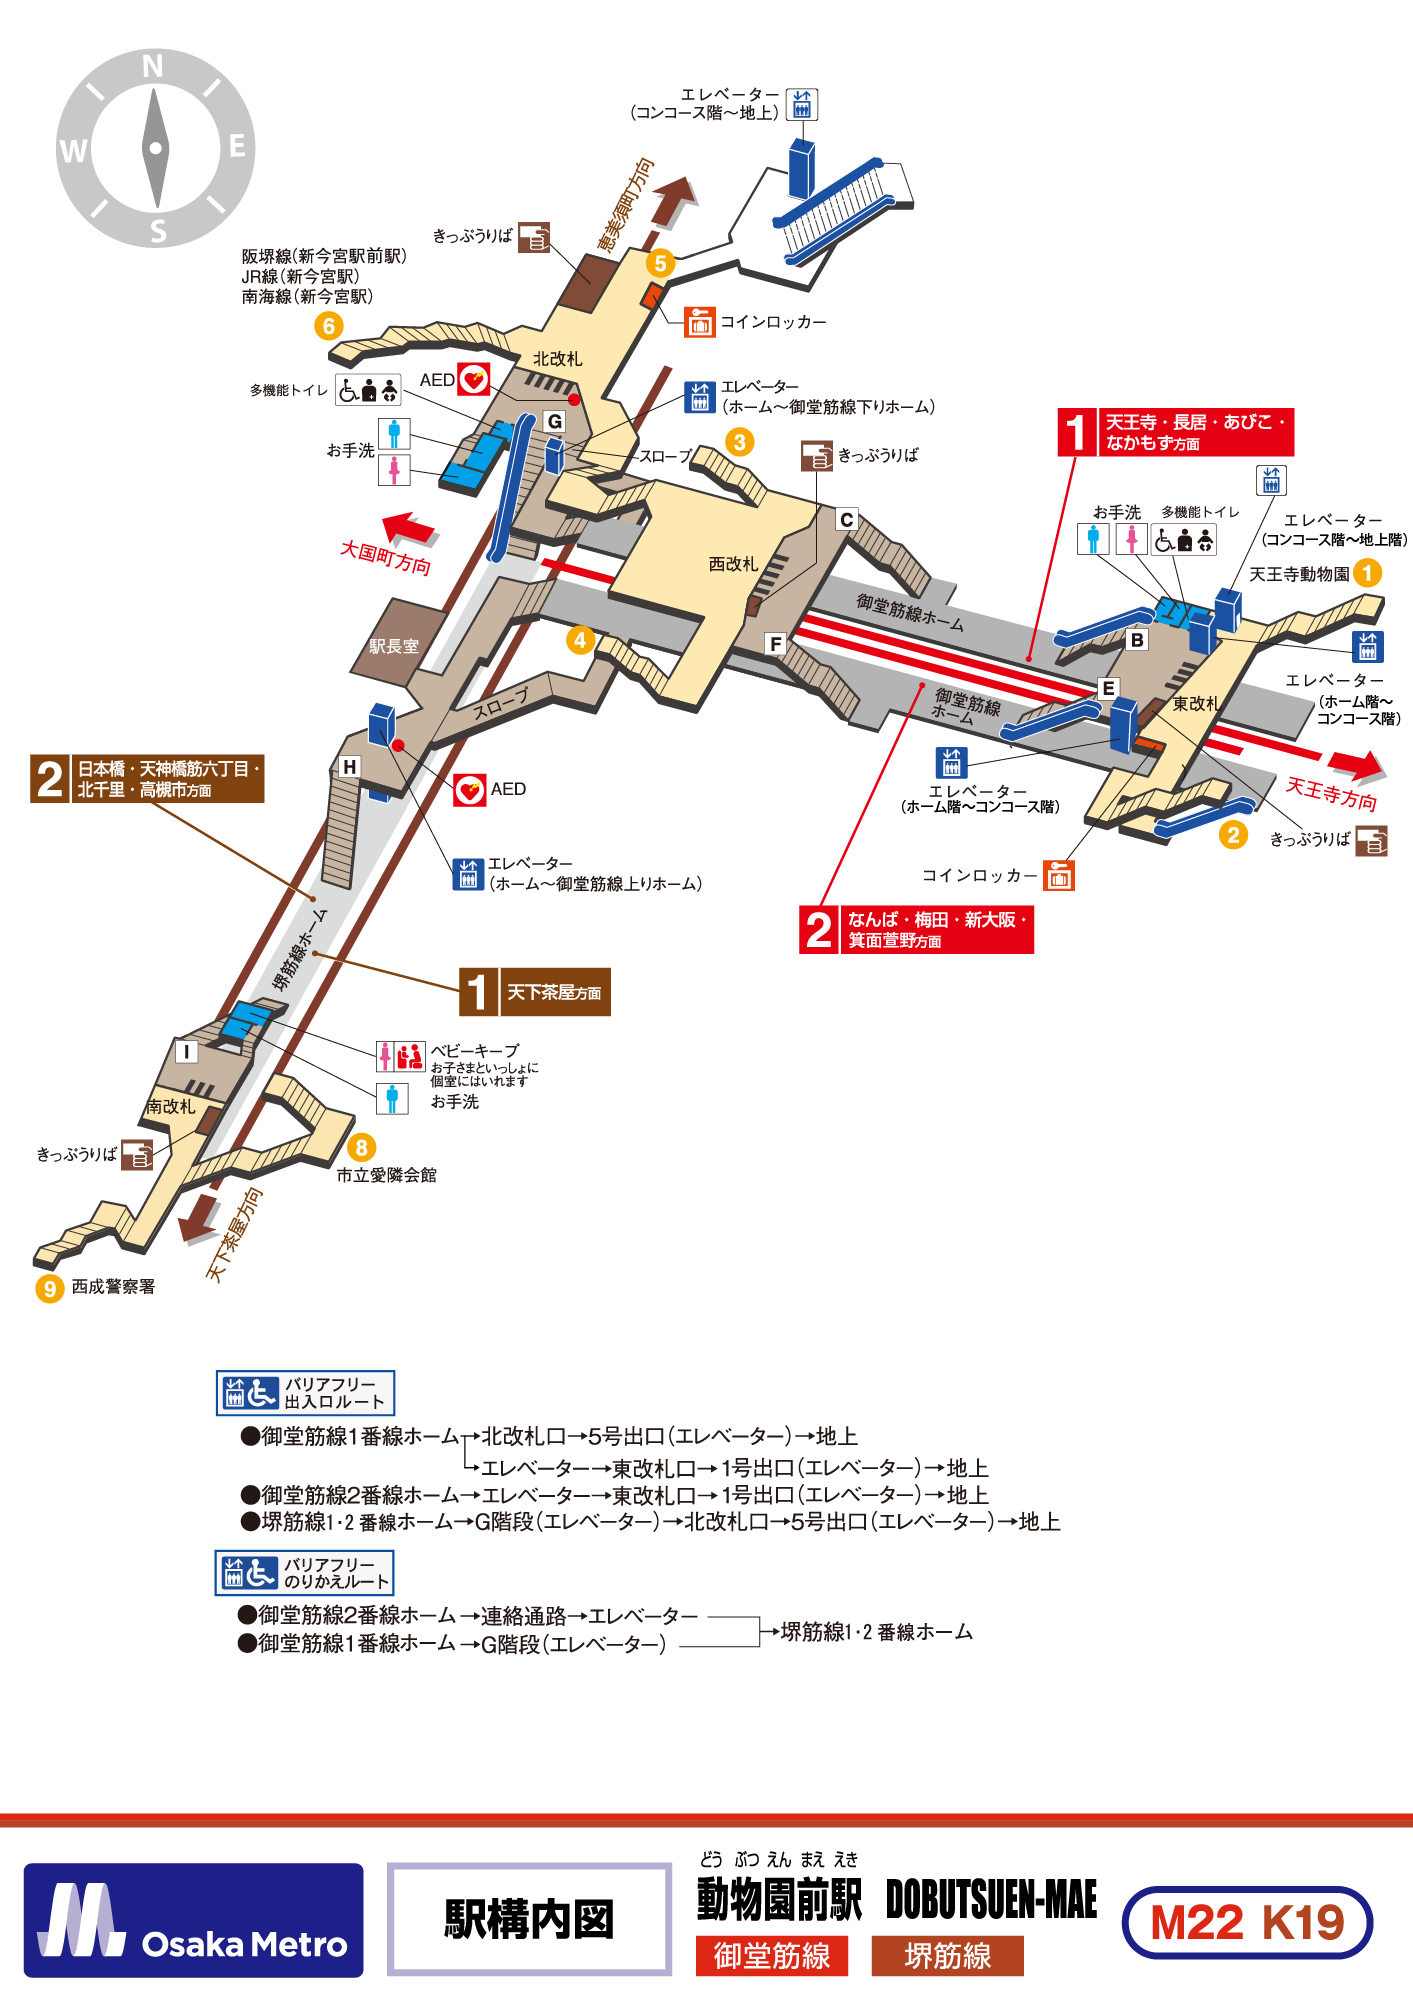 Dobutsuen-mae｜Osaka Metro